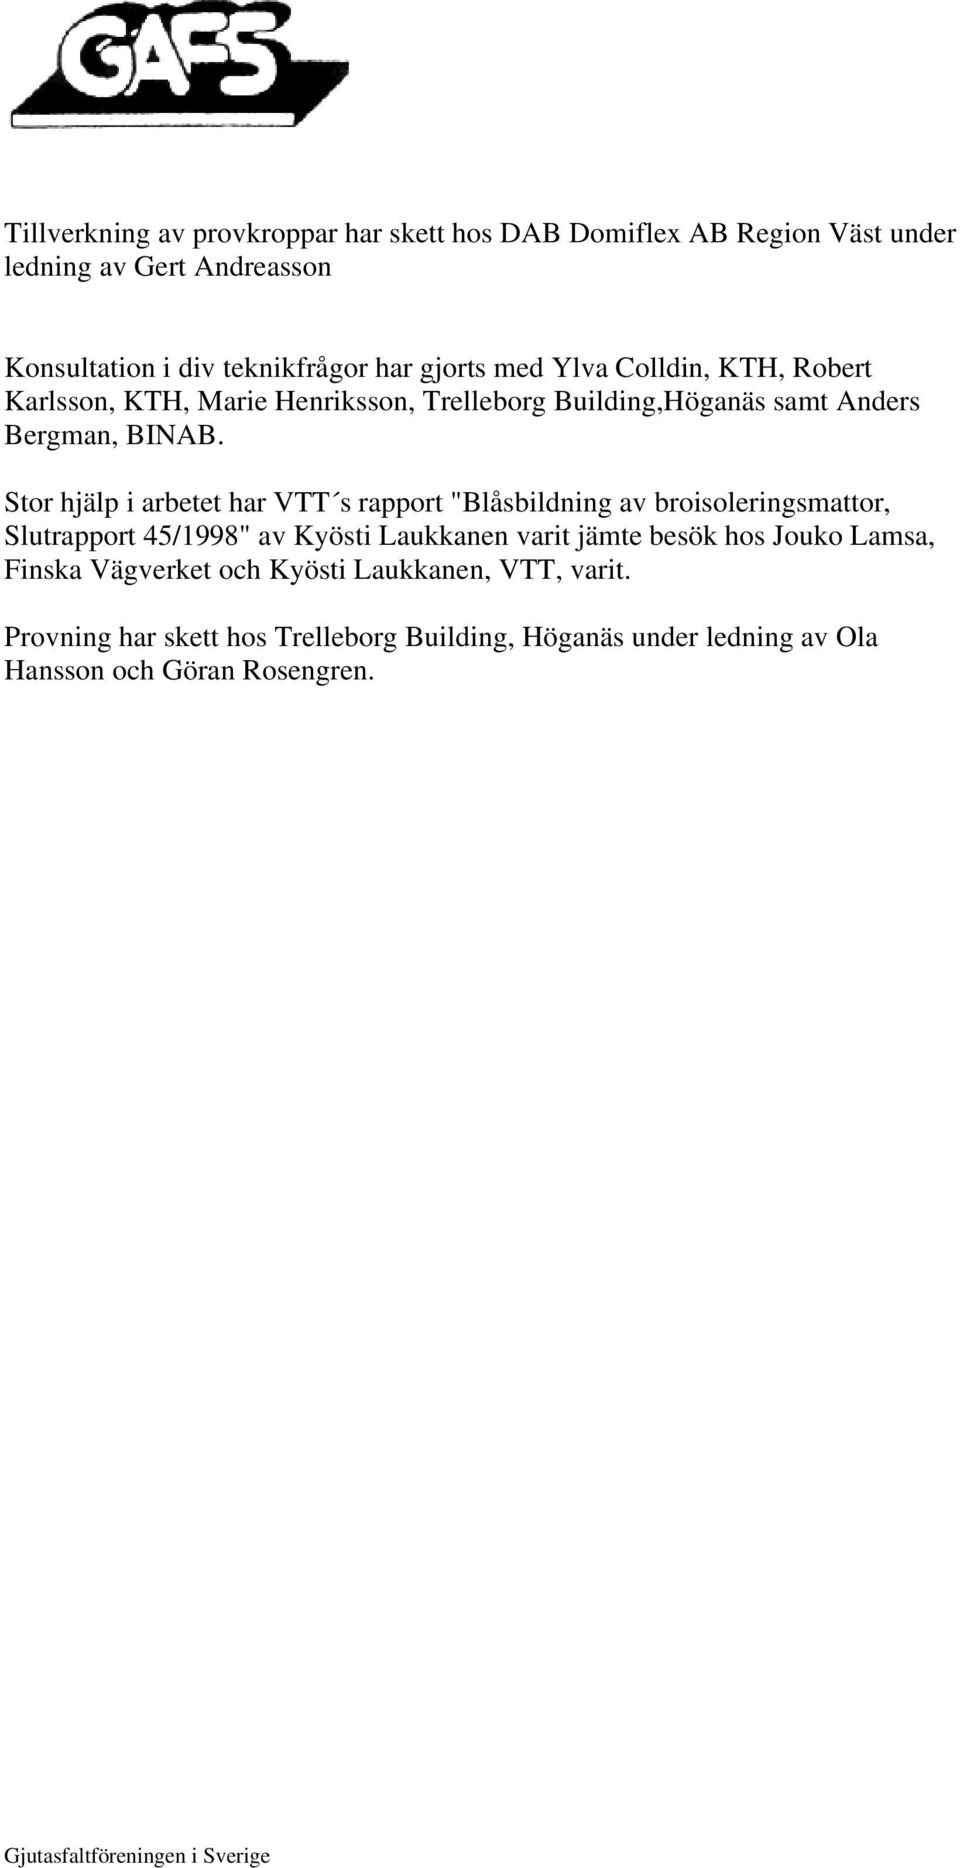 Stor hjälp i arbetet har VTT s rapport "Blåsbildning av broisoleringsmattor, Slutrapport 45/1998" av Kyösti Laukkanen varit jämte besök hos